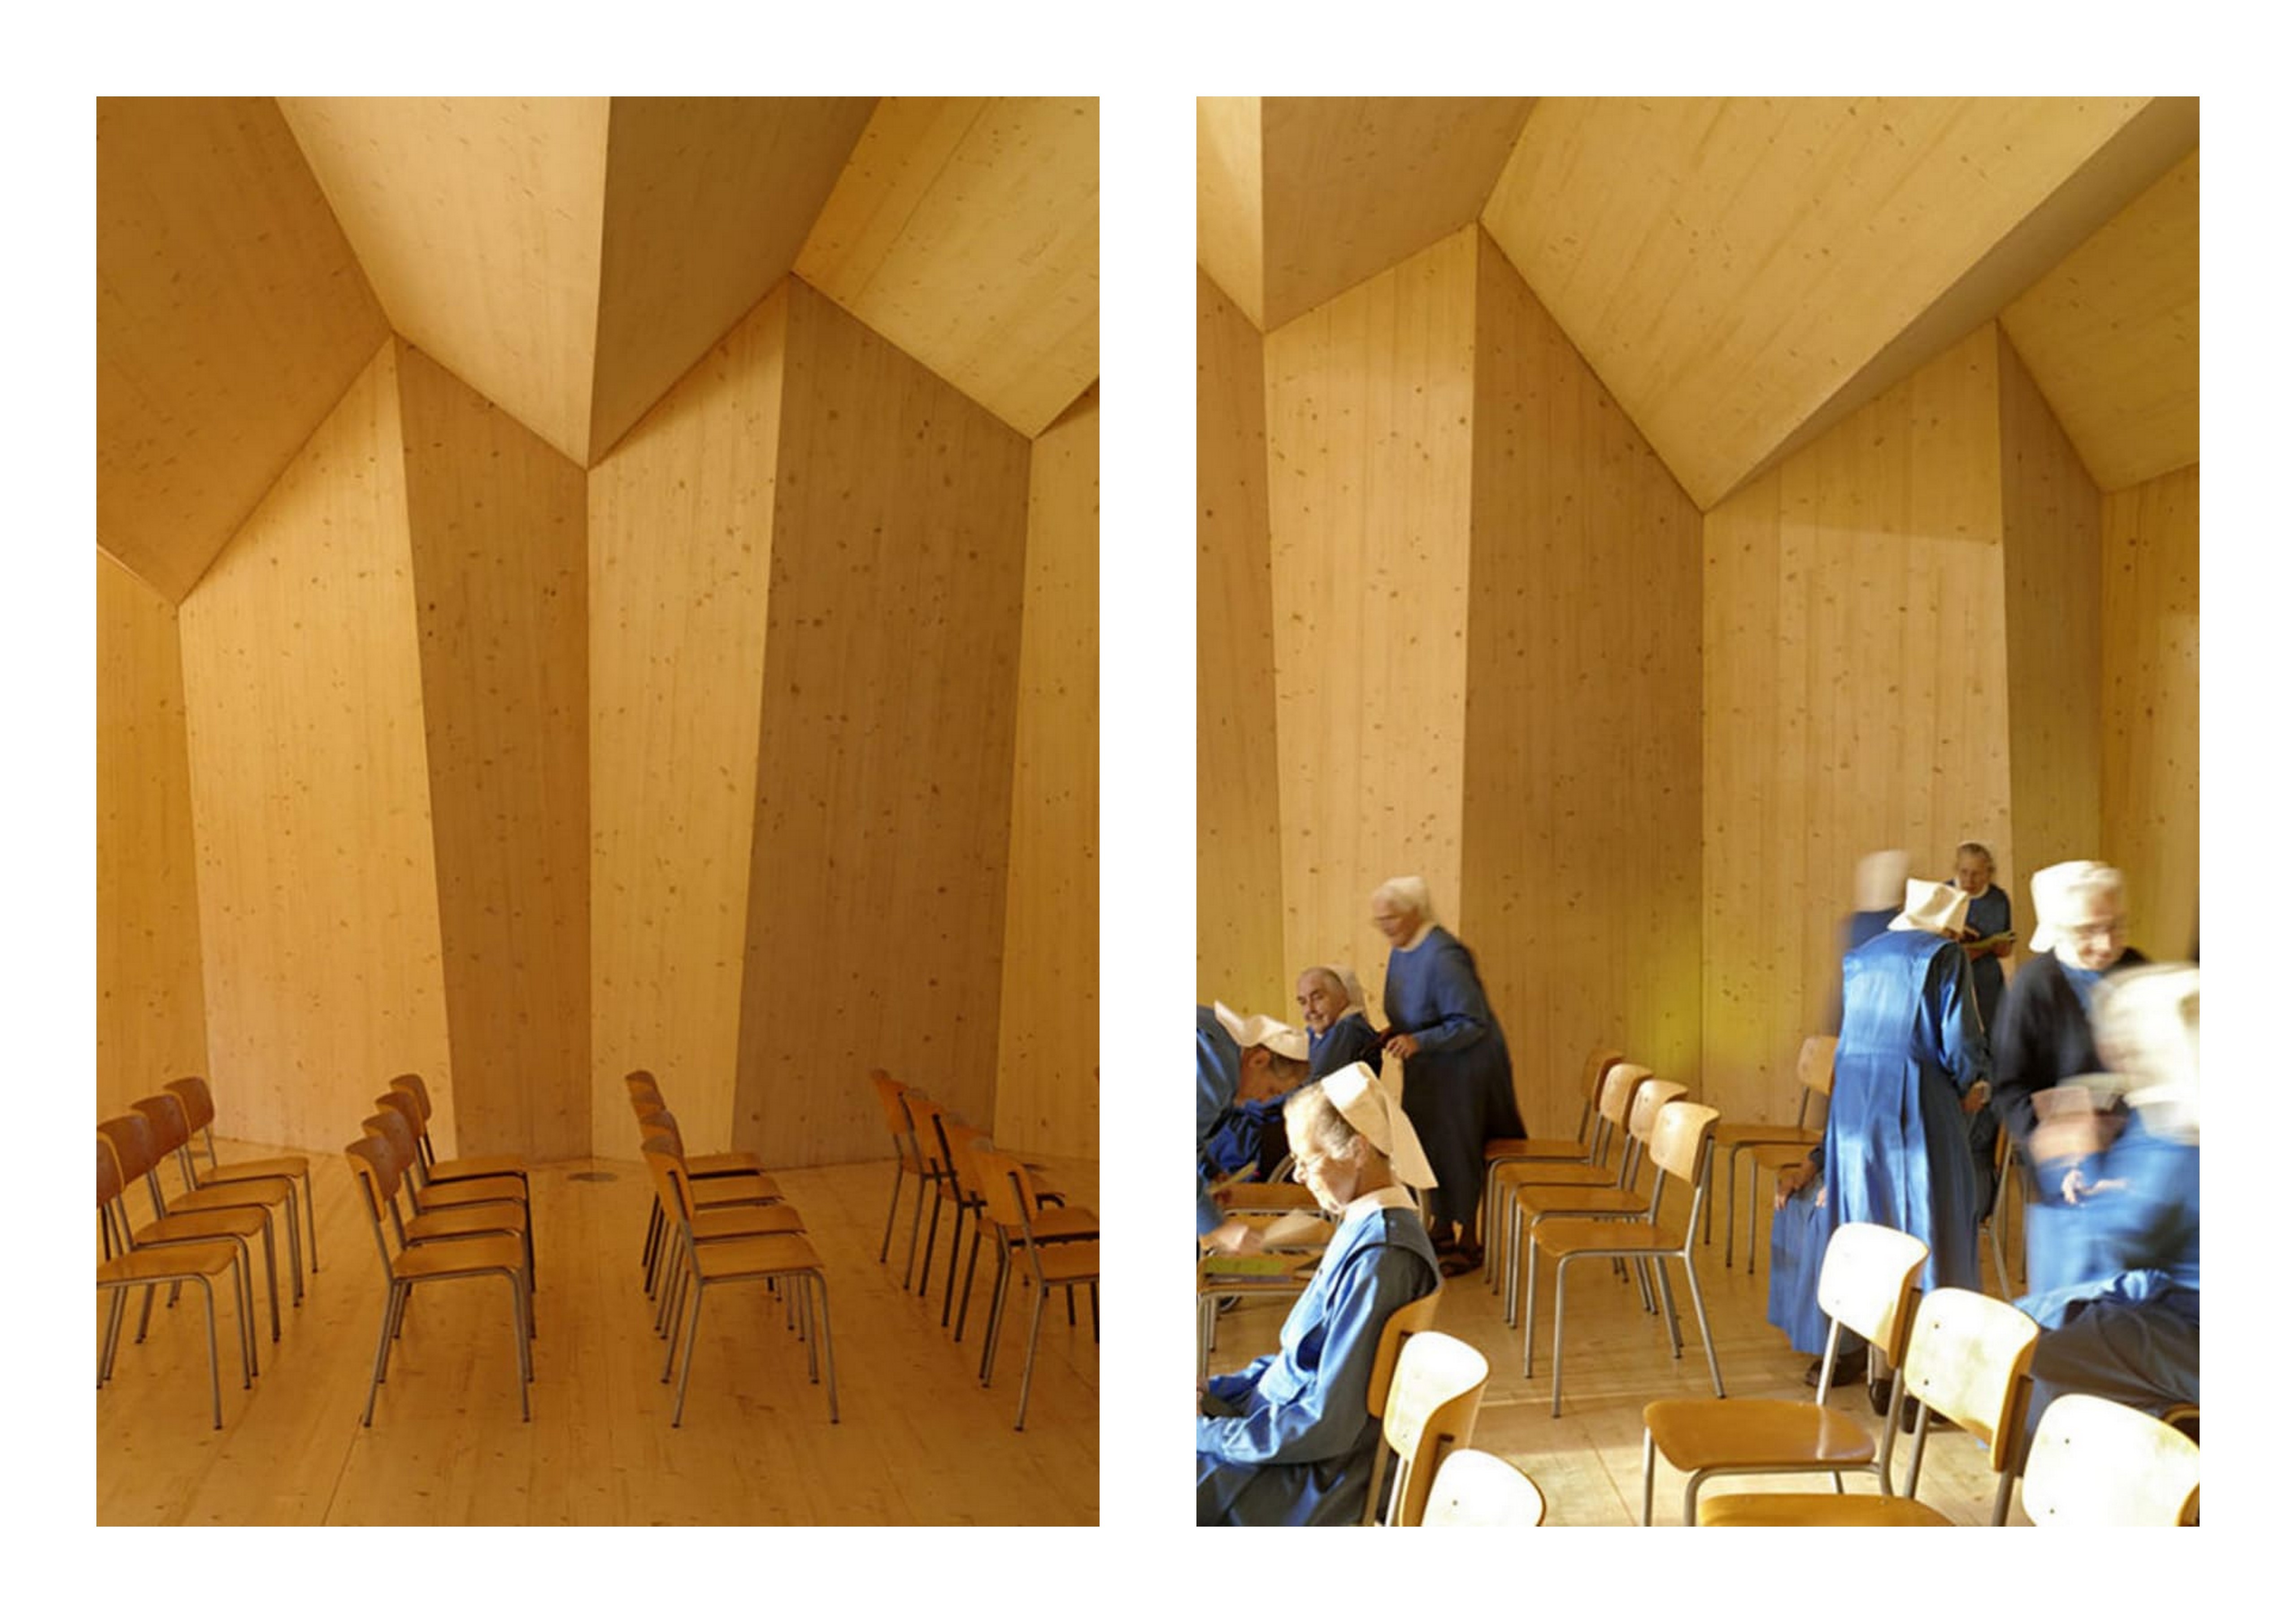 chapelle-origami-localarchitecture-danilo-mondada-st-loup-0